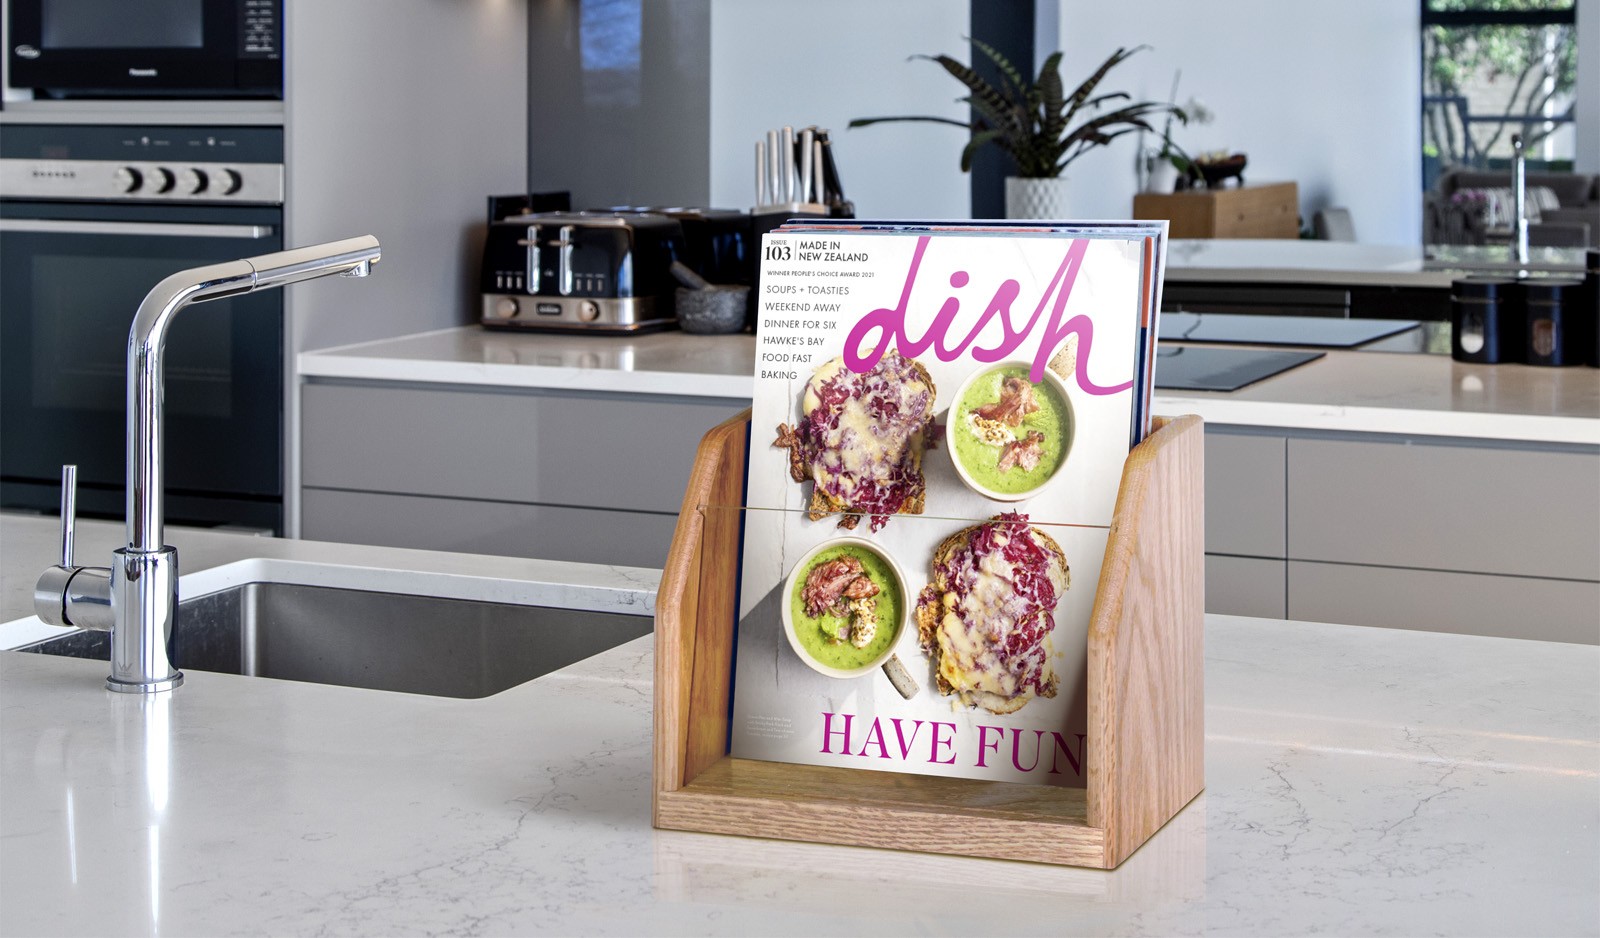 Dish Magazine